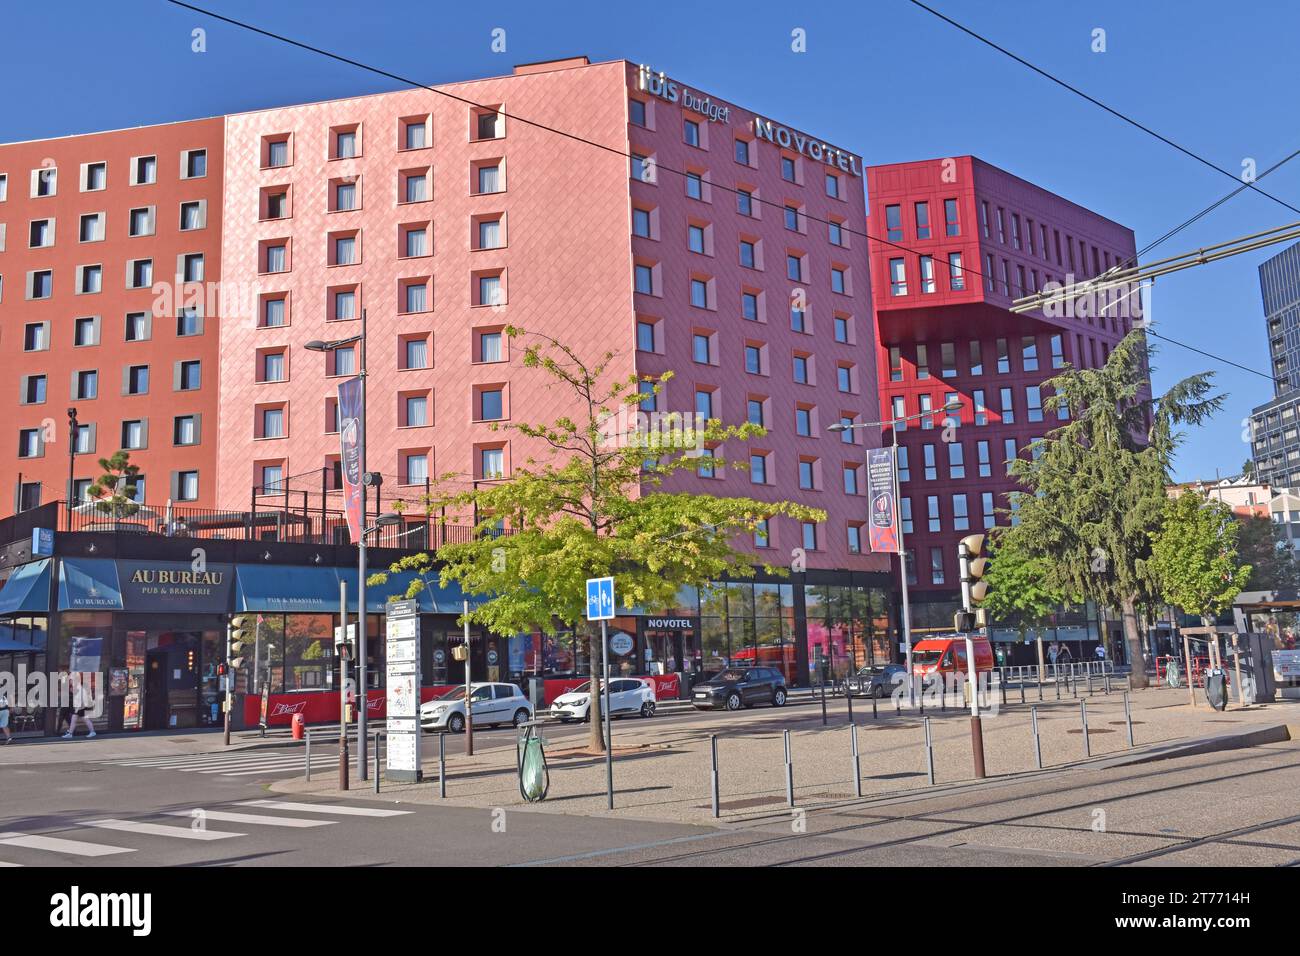 St Etienne, una città deindustrializzata che si reinventa, creando un'area commerciale e un centro di transito vicino alla straordinaria stazione ferroviaria SNCF, rinnovamento urbano Foto Stock